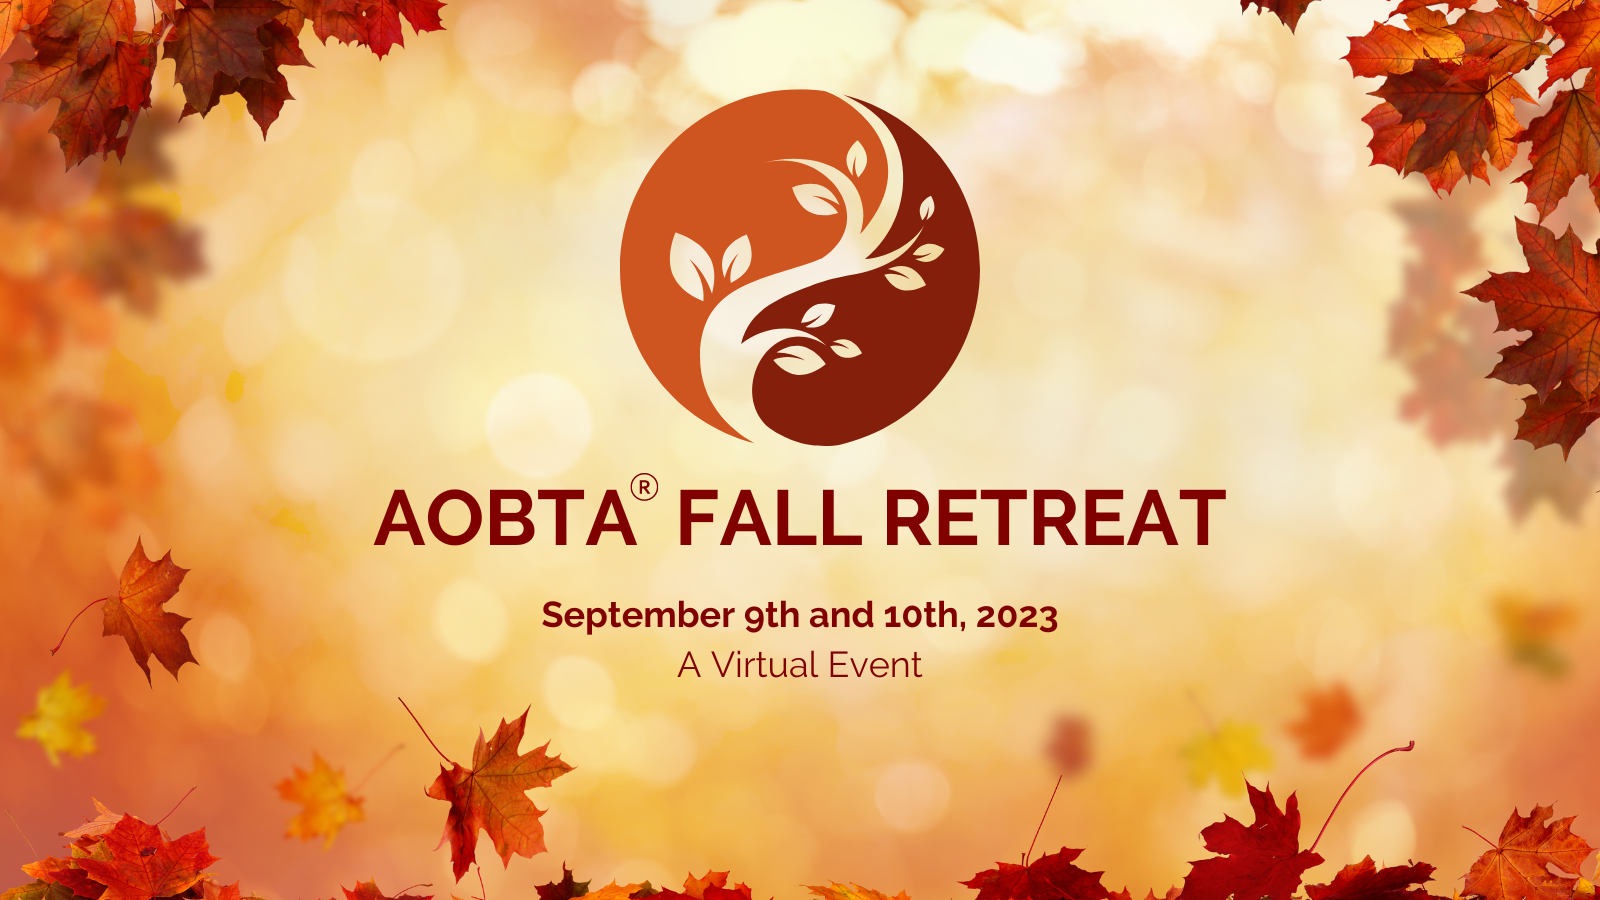 AOBTA® Fall Retreat 2023